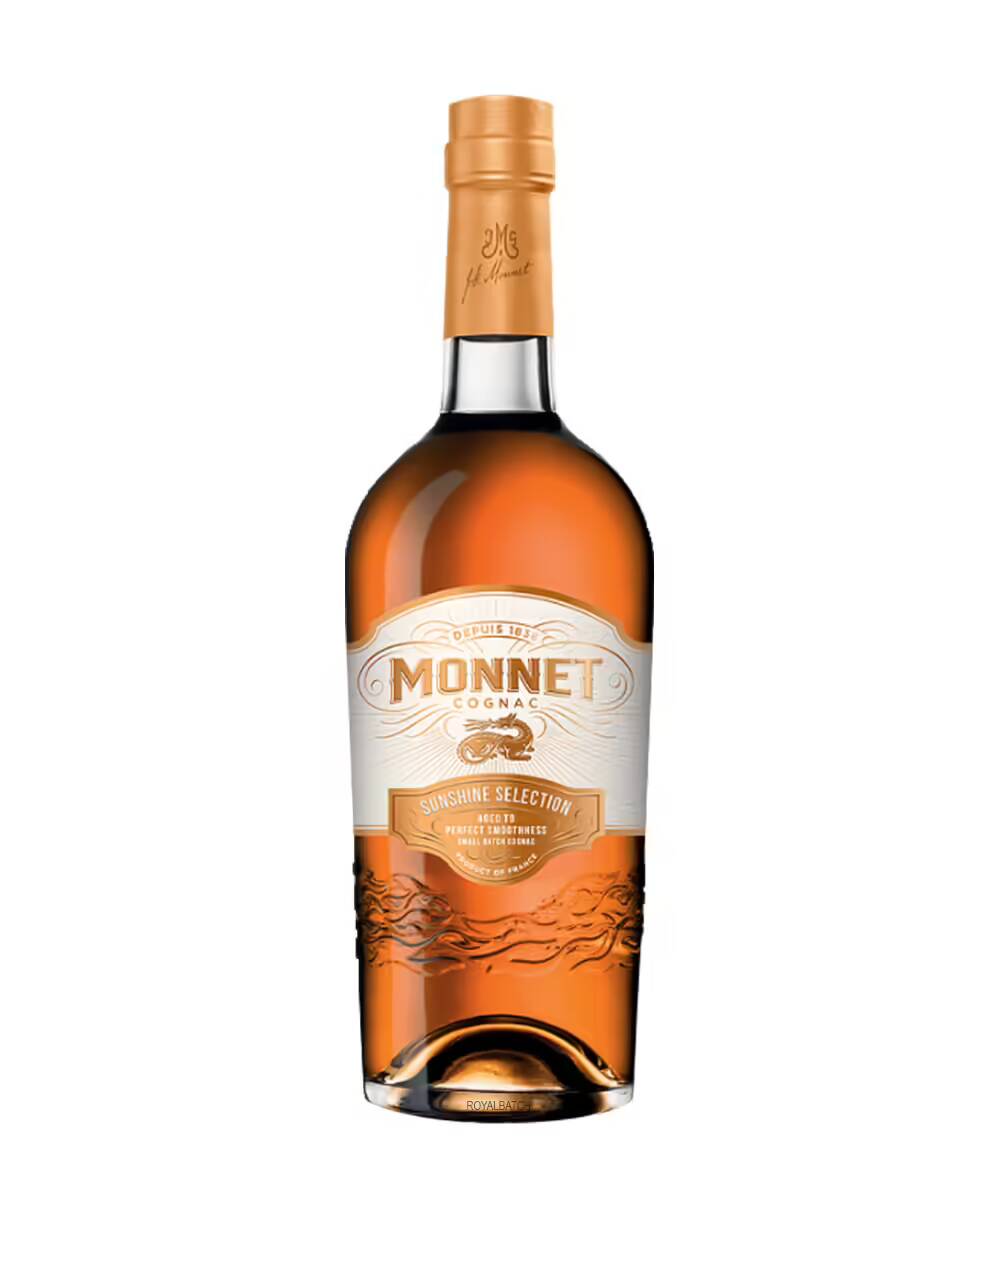 Monnet Sunshine Selection Cognac